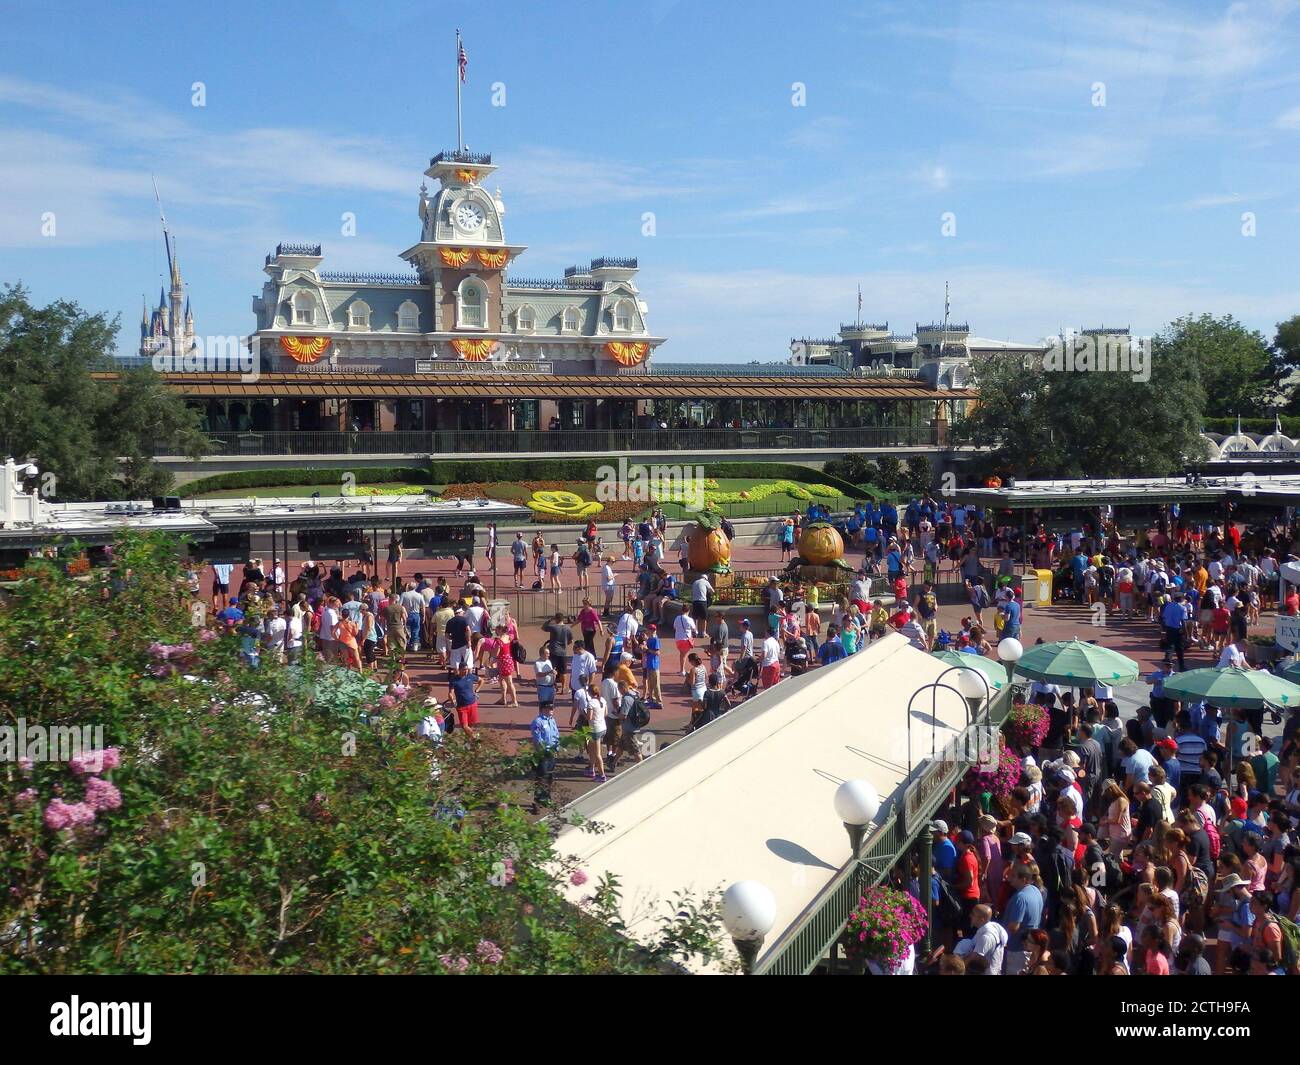 Clients entrant dans le parc Magic Kingdom, Walt Disney World, Orlando, Floride, États-Unis Banque D'Images